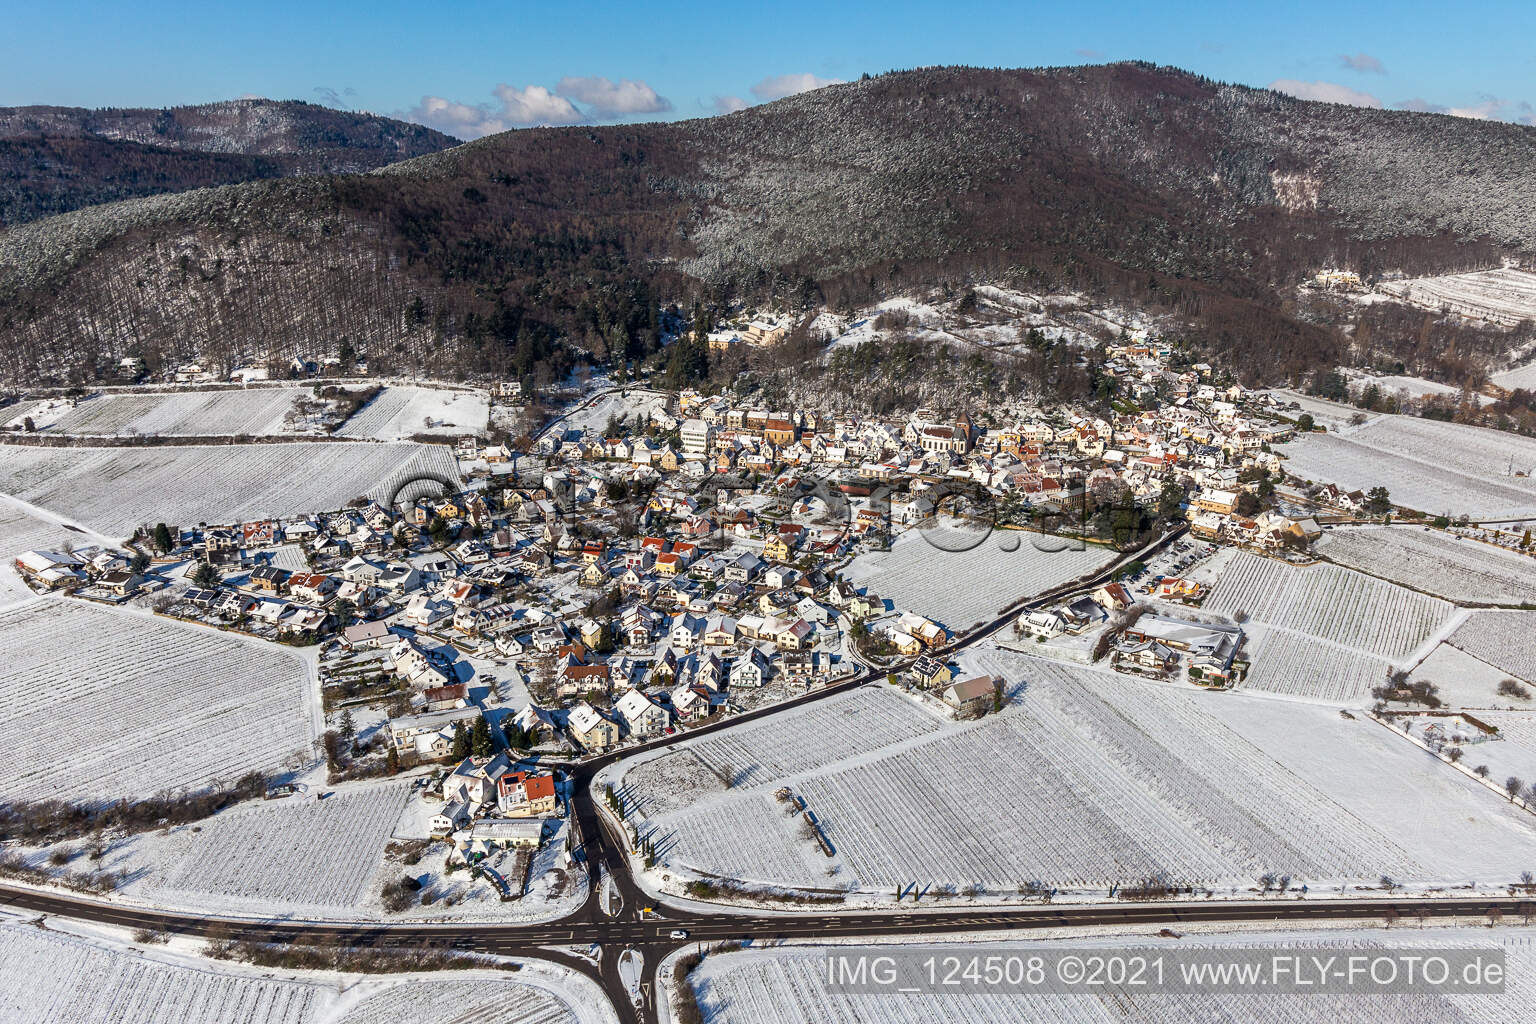 Vue aérienne de Centre du village enneigé en hiver, à la lisière des vignes et des domaines viticoles de la région viticole de la Weinstrasse à Burrweiler dans le département Rhénanie-Palatinat, Allemagne